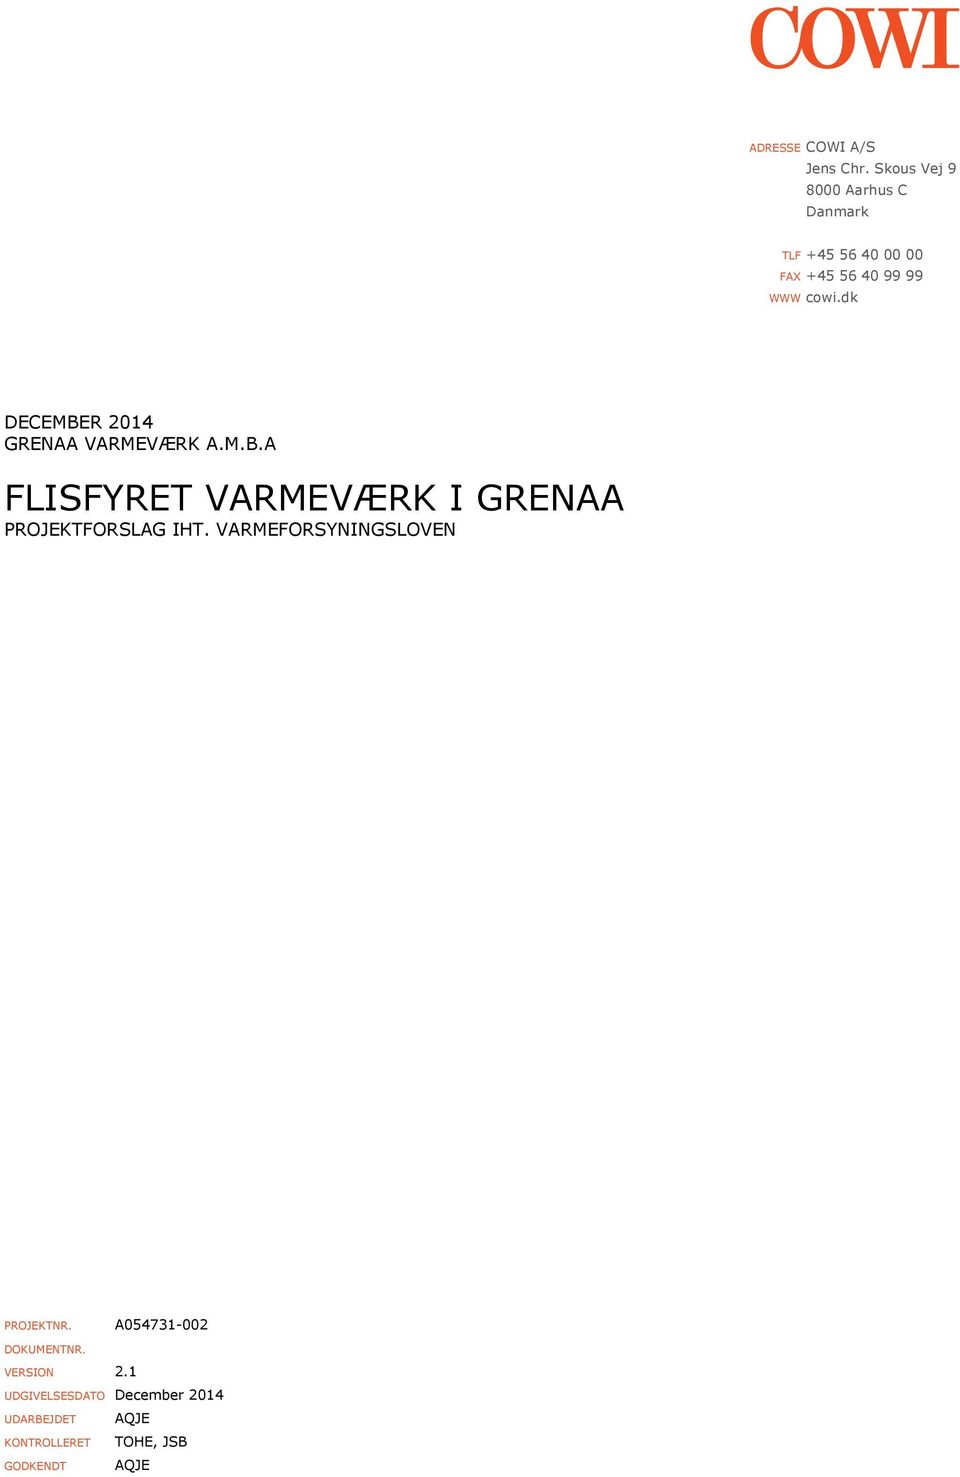 dk DECEMBER 2014 GRENAA VARMEVÆRK A.M.B.A FLISFYRET VARMEVÆRK I GRENAA PROJEKTFORSLAG IHT.